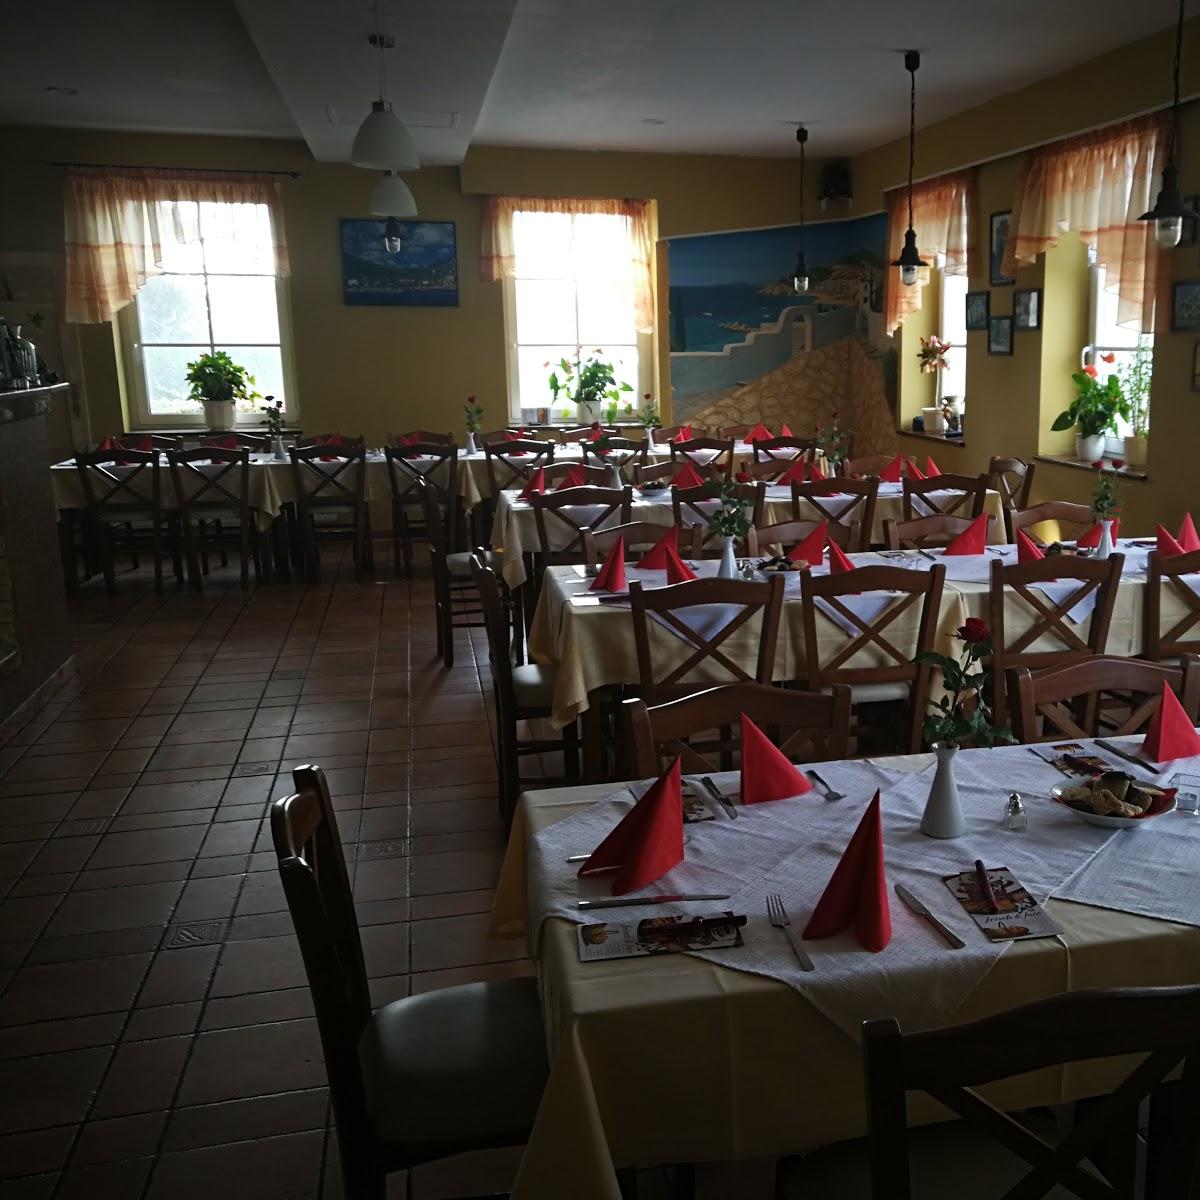 Restaurant "Taverne Hellas in" in Thum